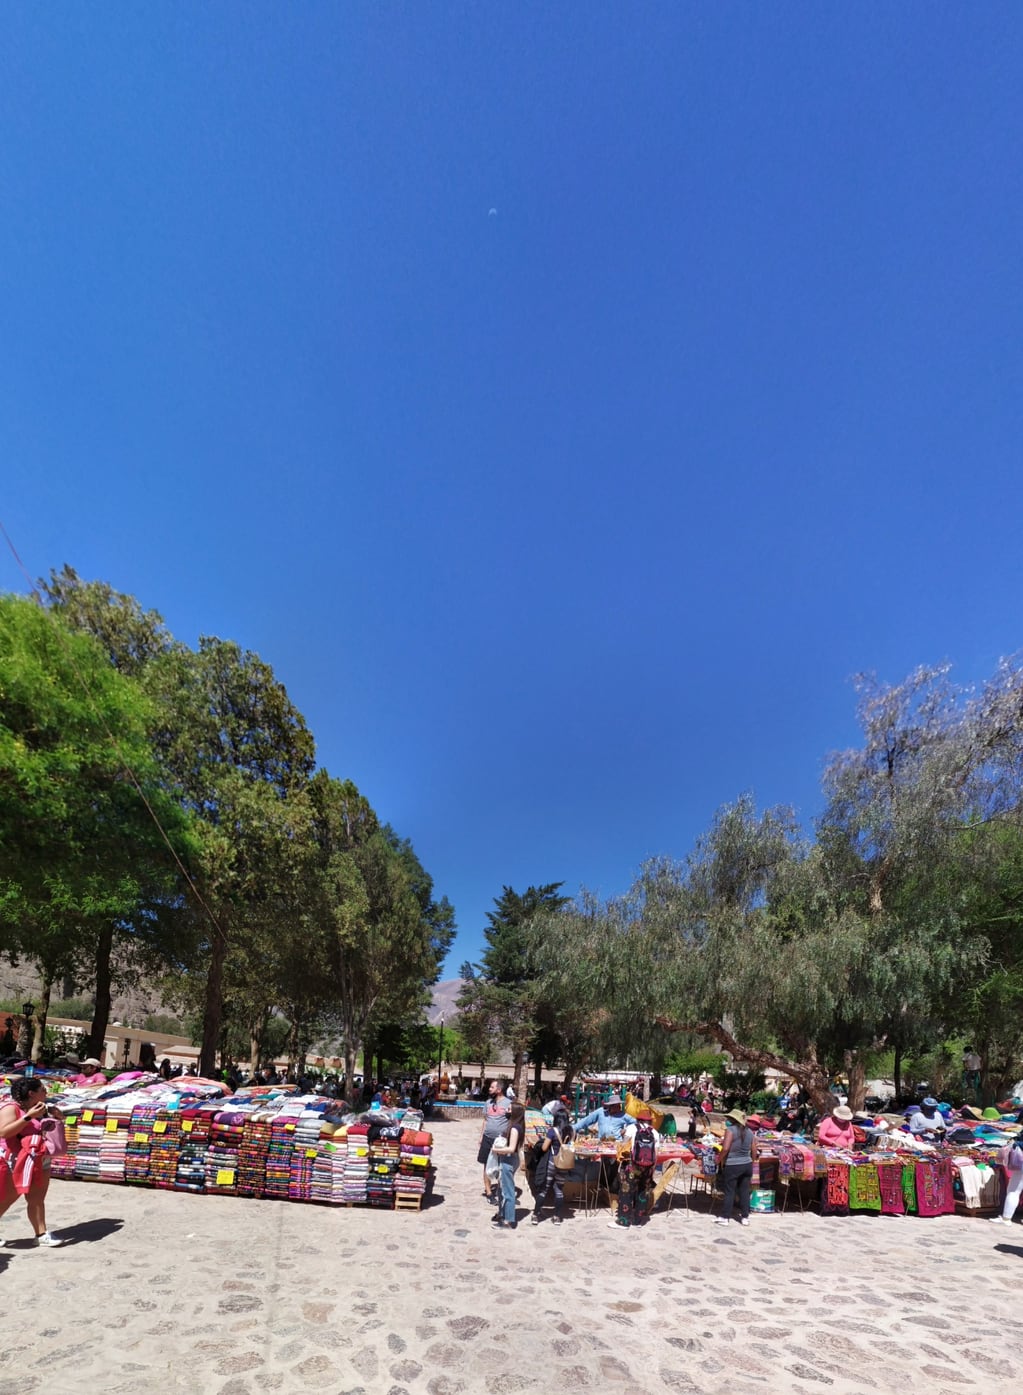 Impactante resulta a los ojos de los visitantes el límpido cielo azul que da marco a las postales de la Quebrada de Humahuaca.